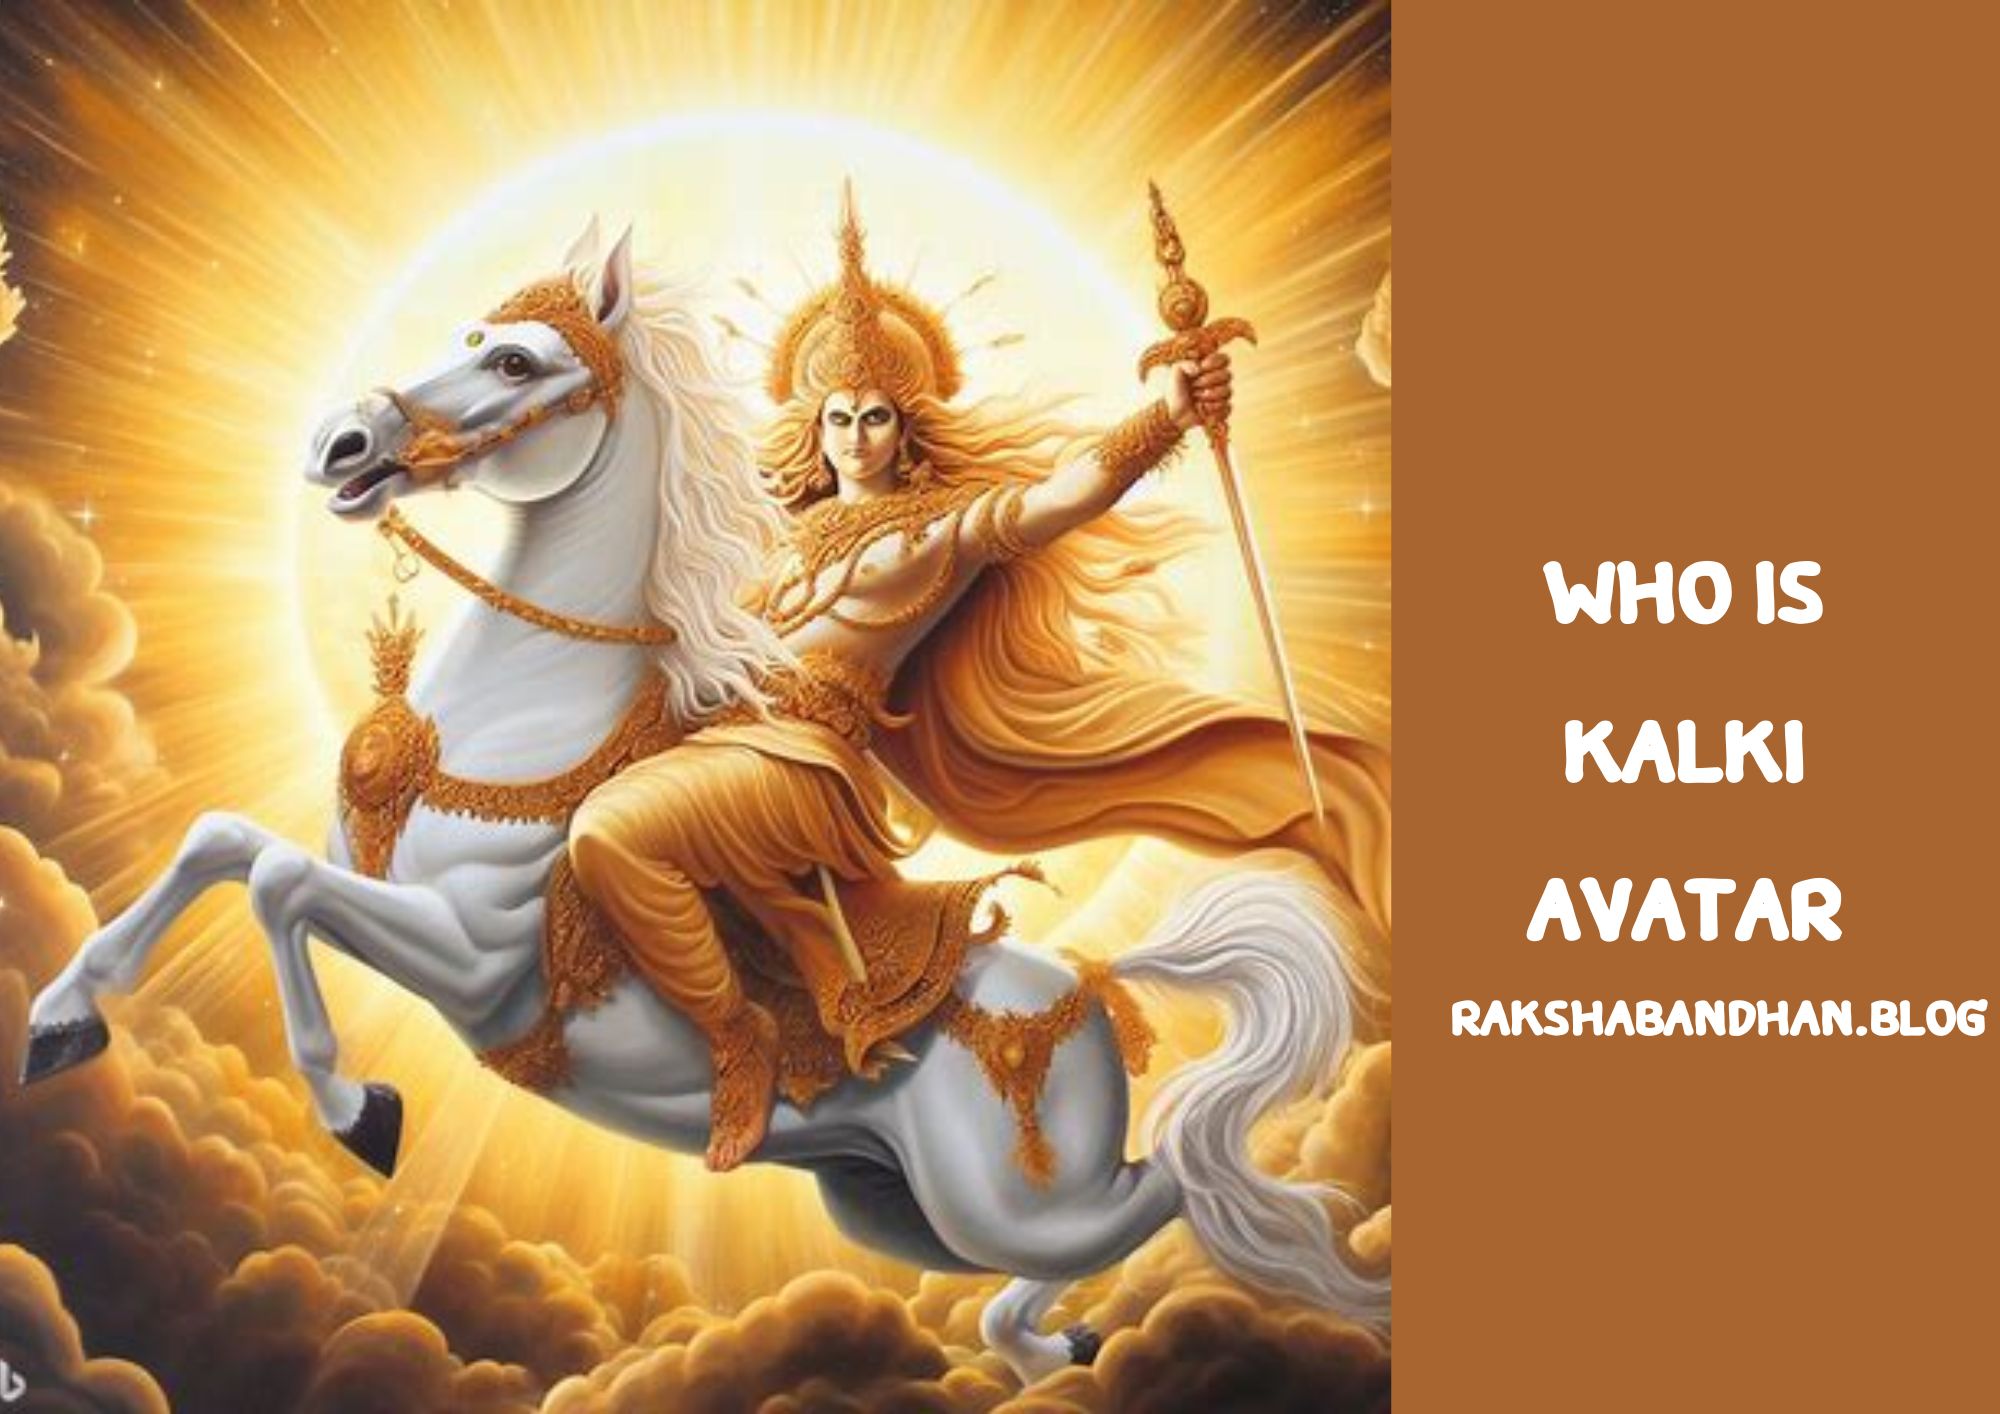 Kalki Avatar Of Lord Vishnu (Who Is Kalki Avatar Of Vishnu) - Kalki Avatar Of Lord Vishnu - What Is Kalki Avatar, Kalki Avatar Birth Or Born